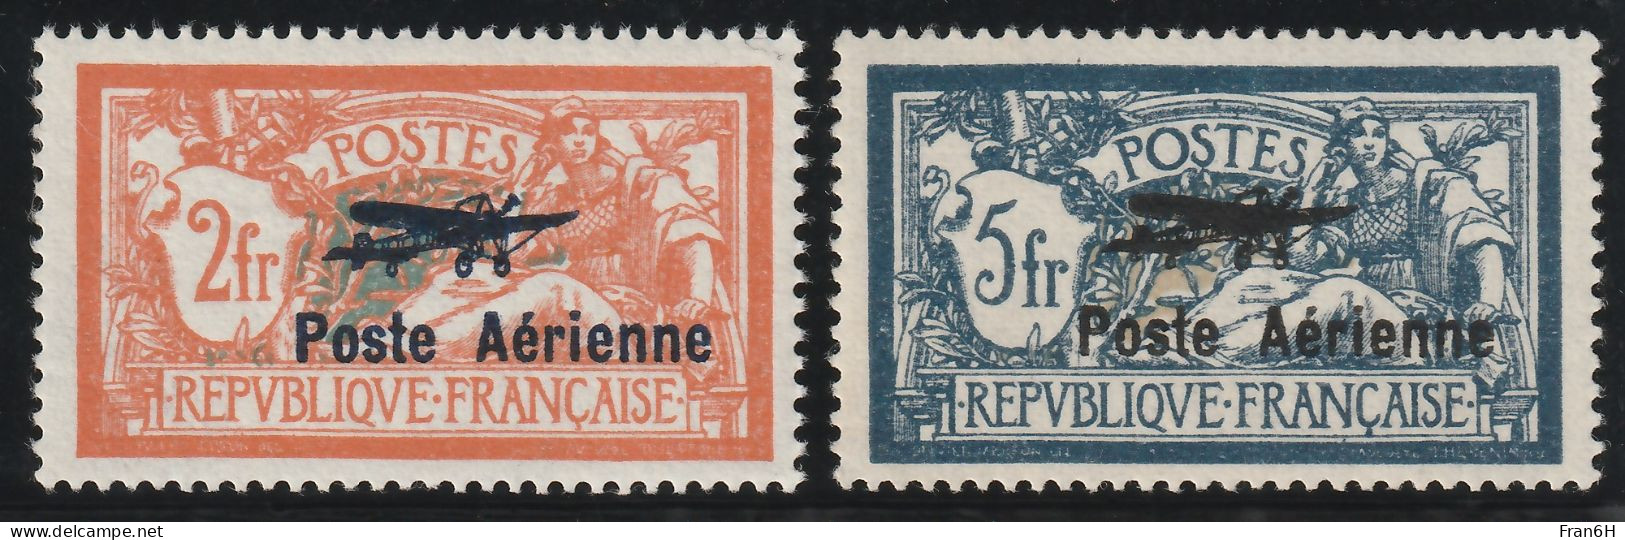 YT PA N° 1 + 2 Signé Brun - Neufs ** - MNH - Cote 950,00 € - 1927-1959 Postfris